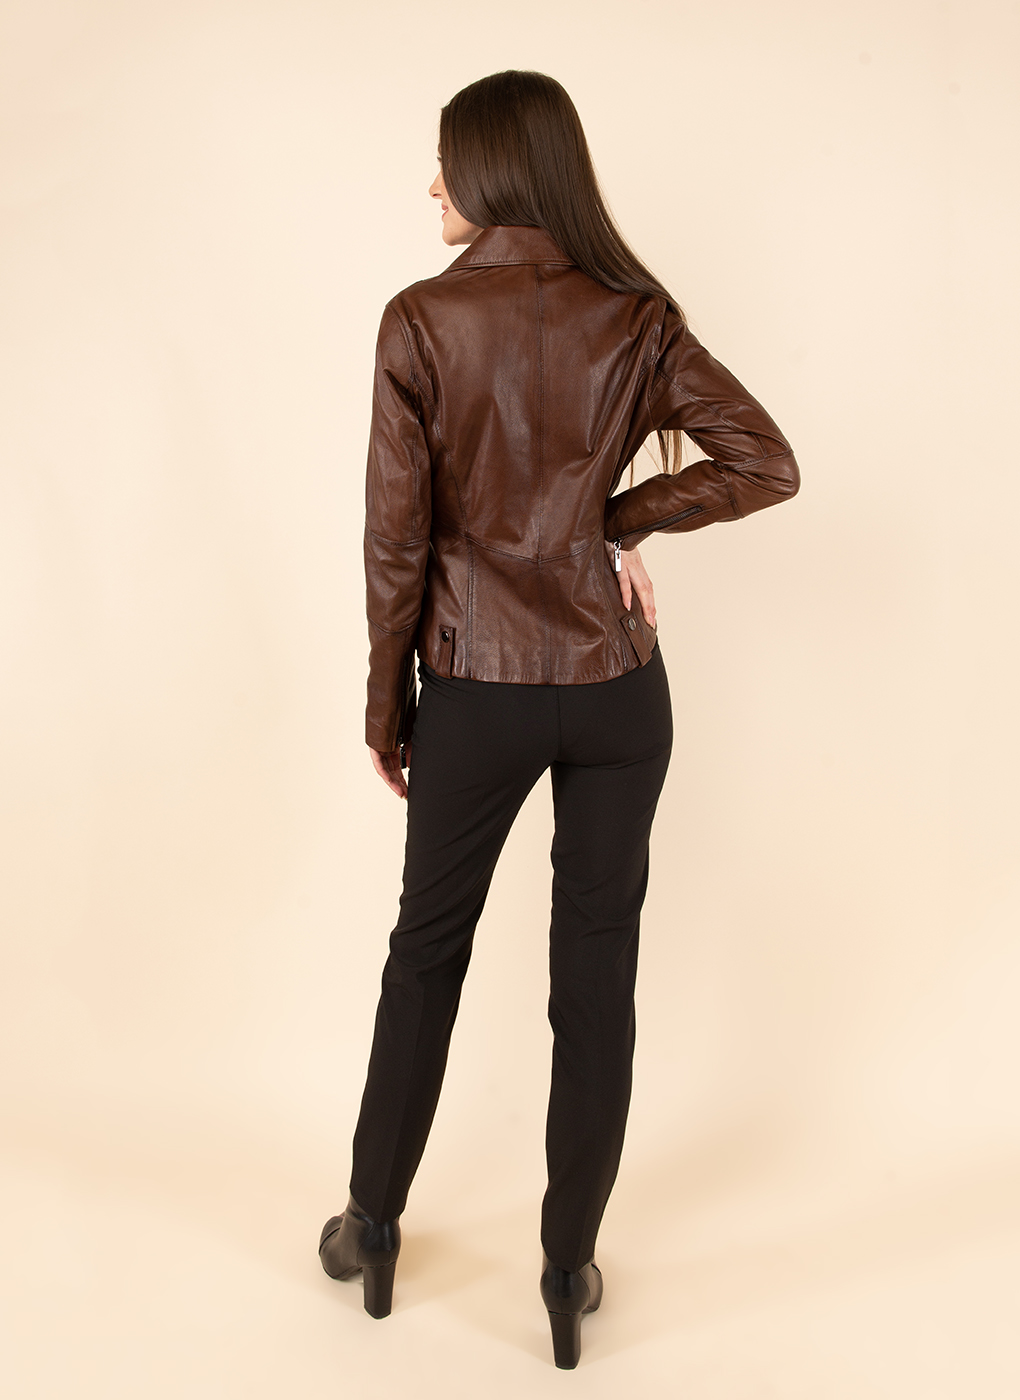 Кожаная куртка женская Каляев 47479 коричневая 50 RU